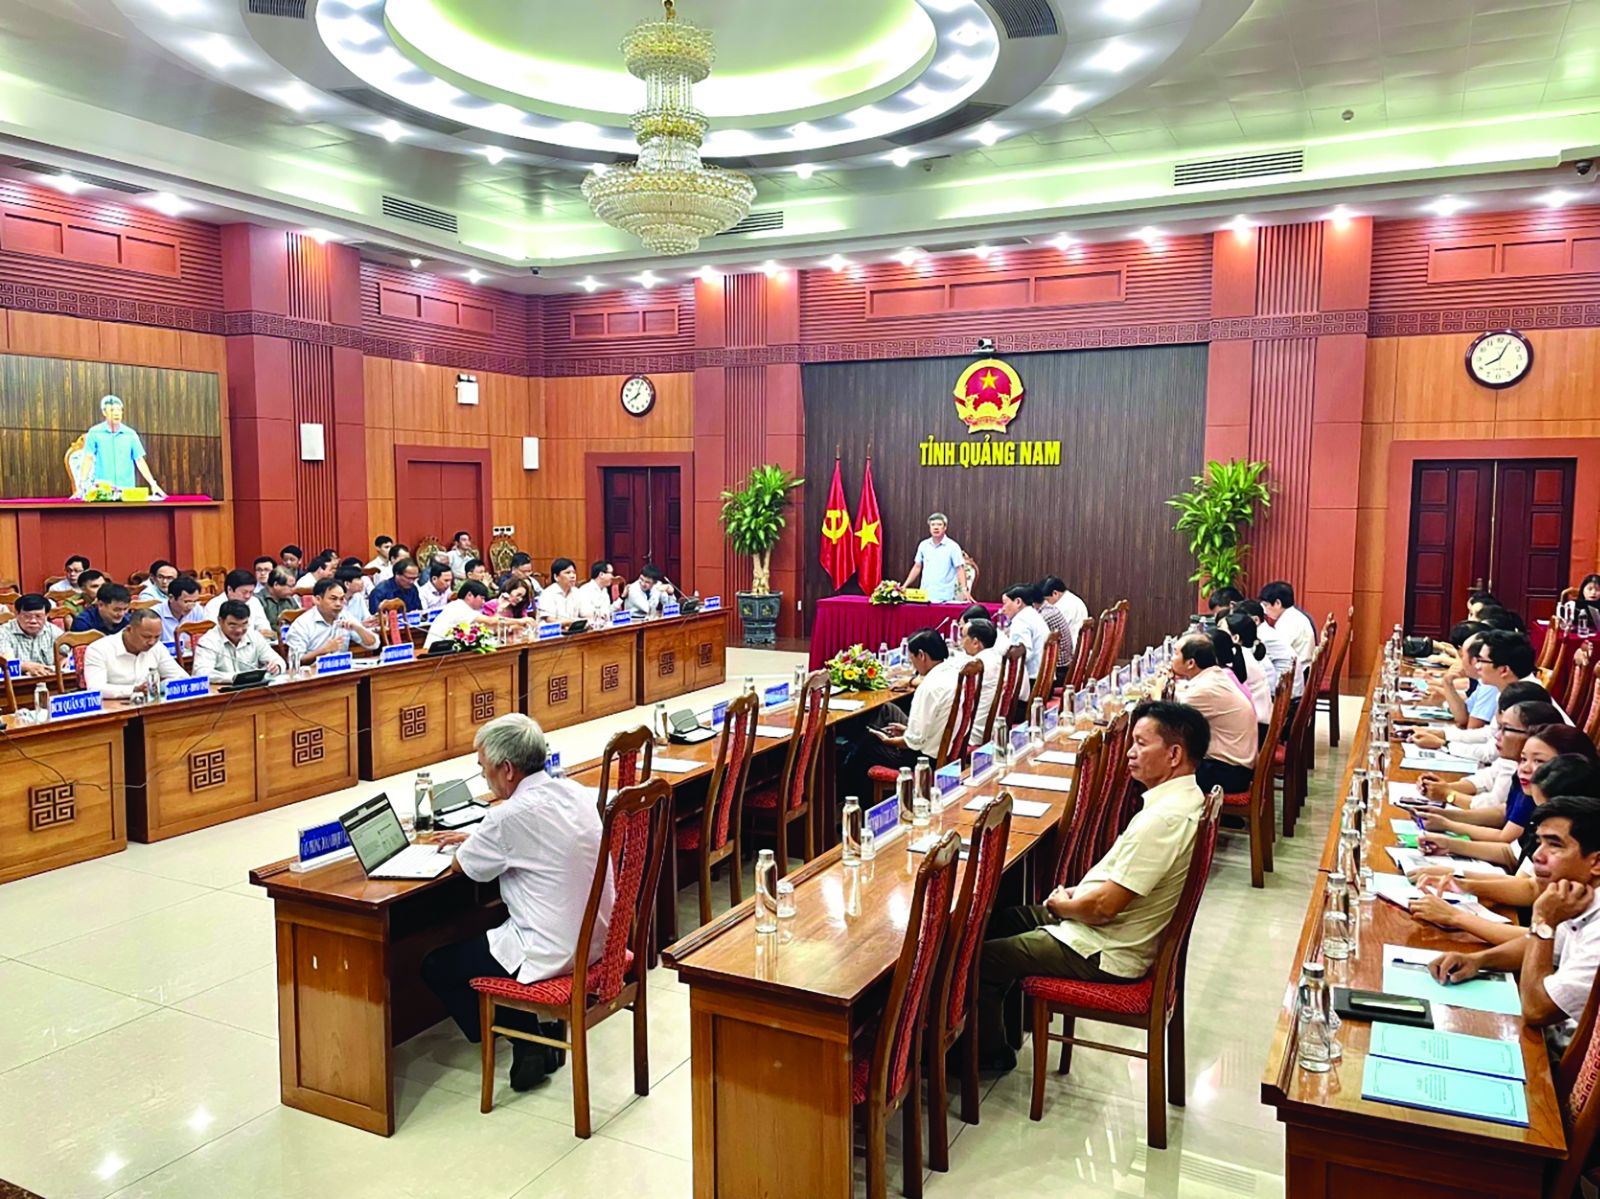  Hội nghị đánh giá Chỉ số Năng lực cạnh tranh cấp tỉnh ( PCI) và tập huấn, bồi dưỡng kiến thức về nâng cao Chỉ số PCI, DDCI tỉnh Quảng Nam năm 2022.